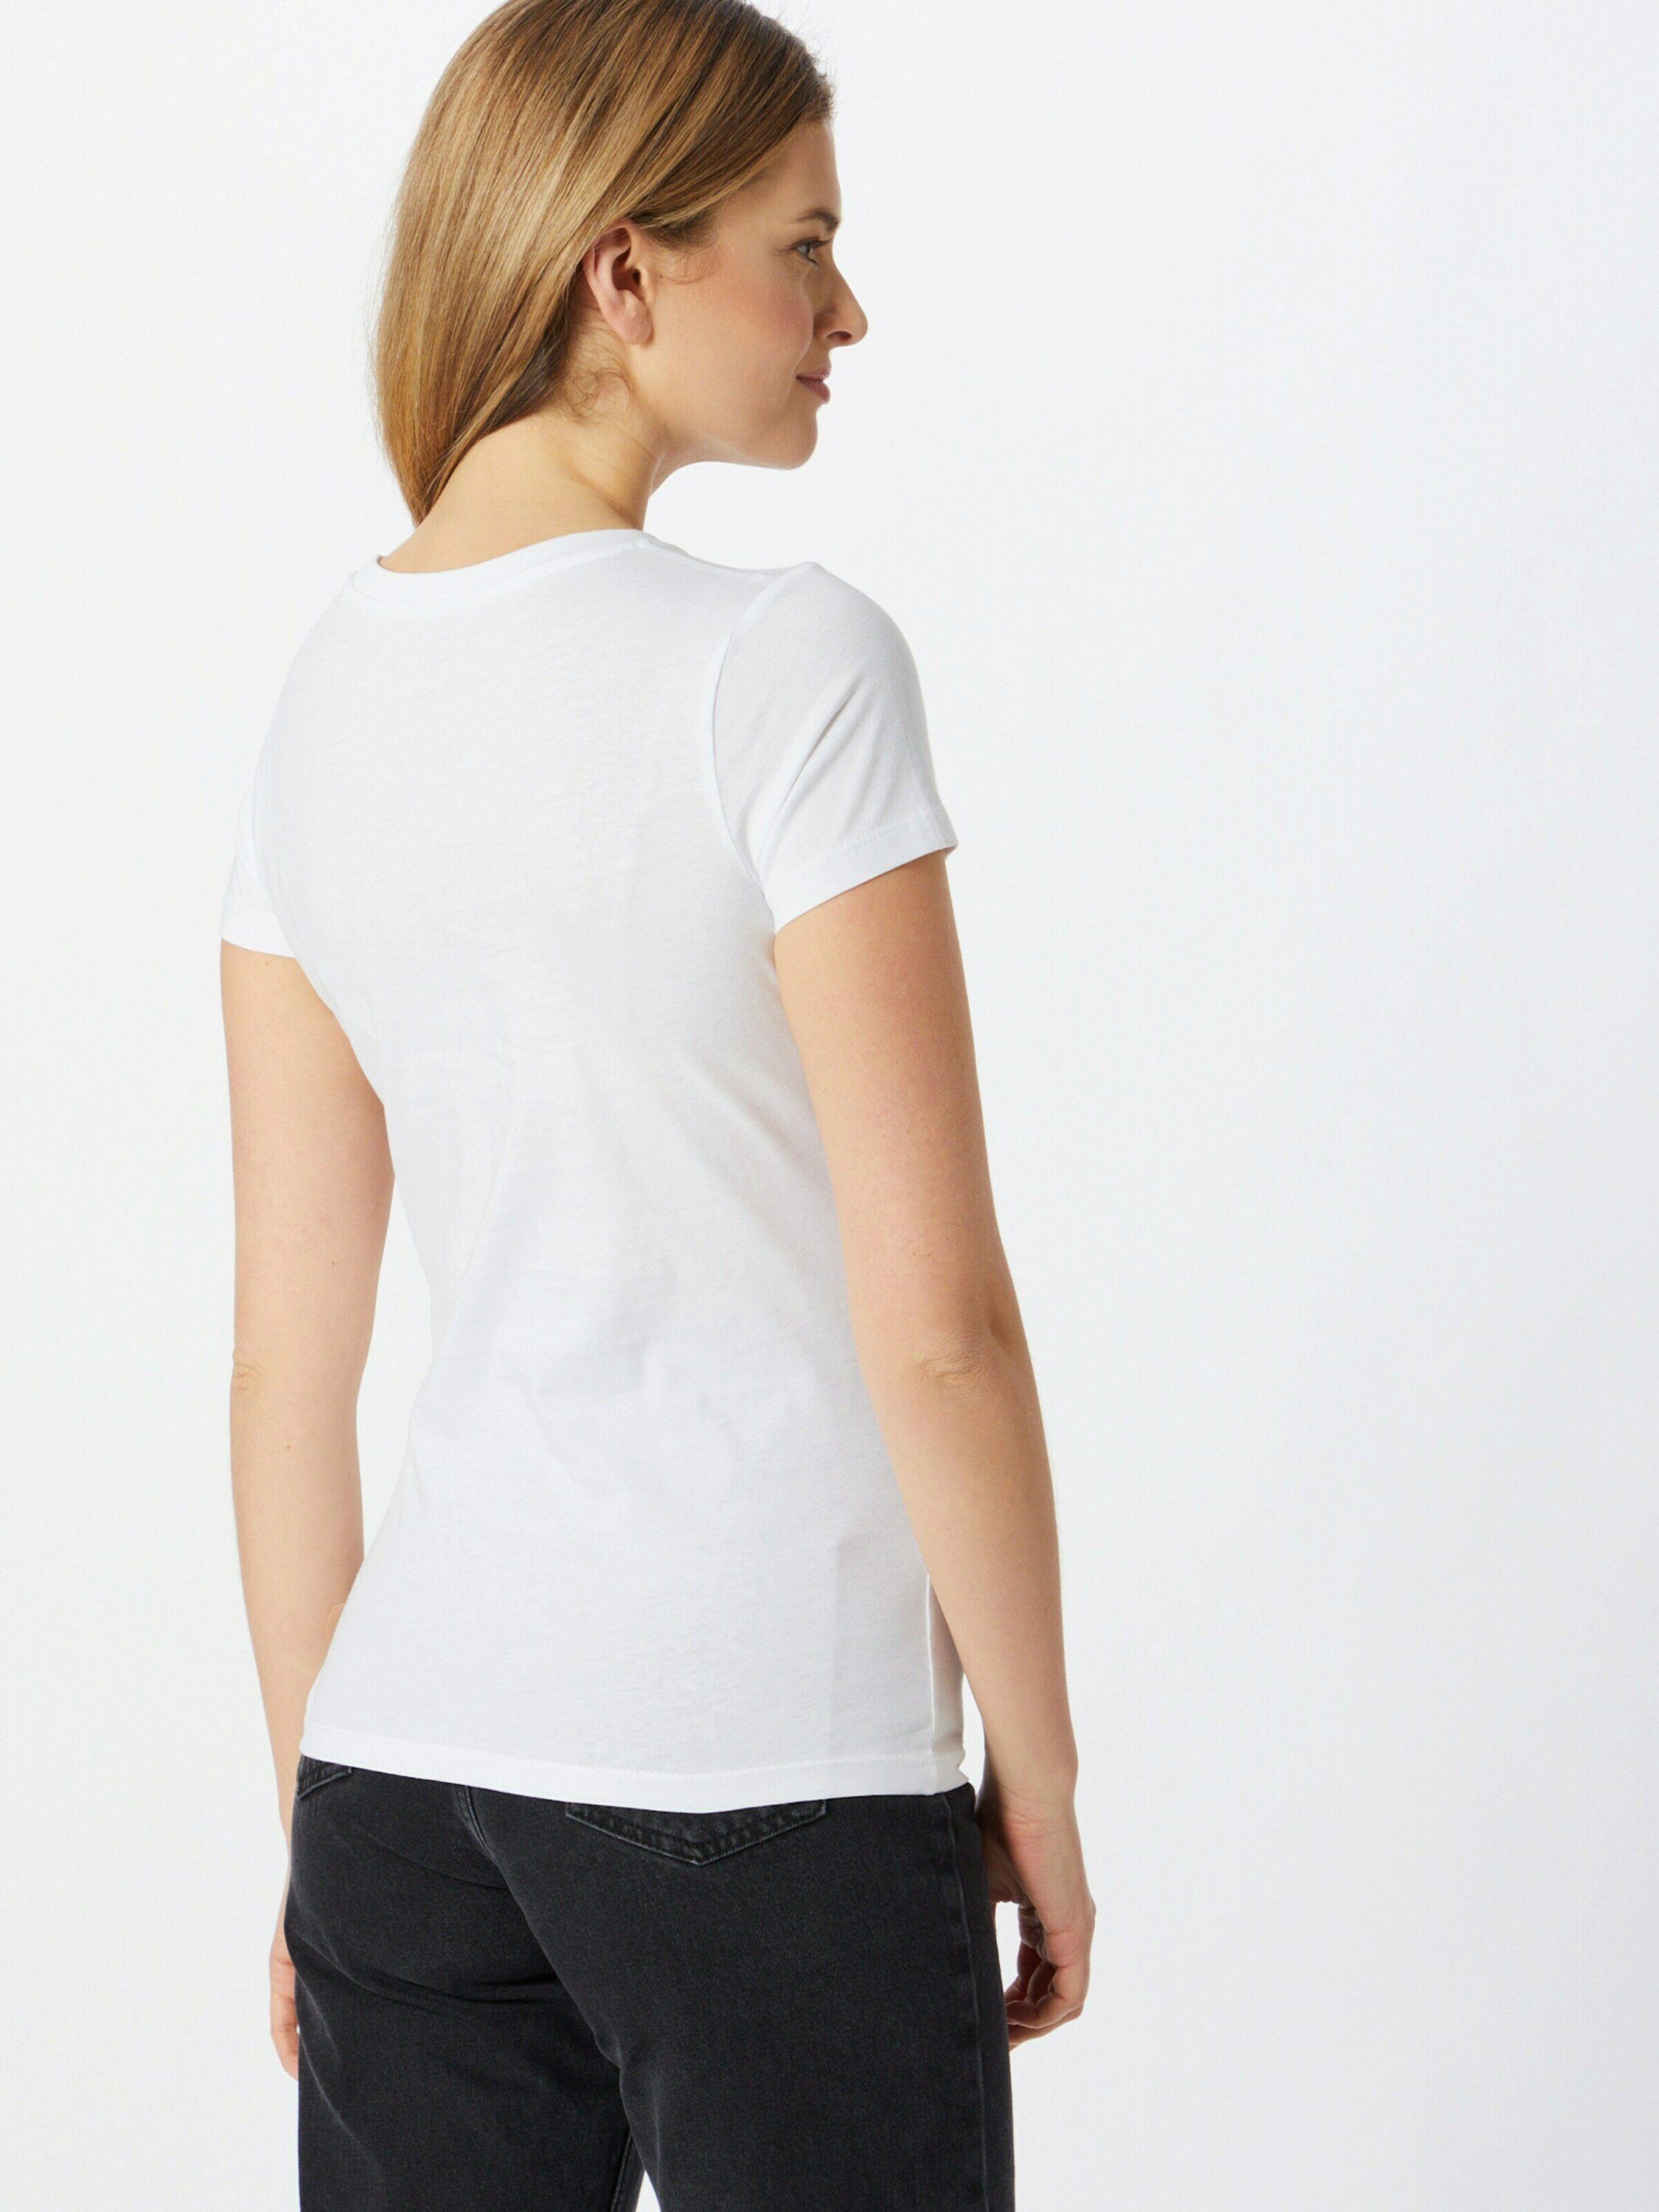 Damen Shirts EINSTEIN & NEWTON T-Shirt (1-tlg)